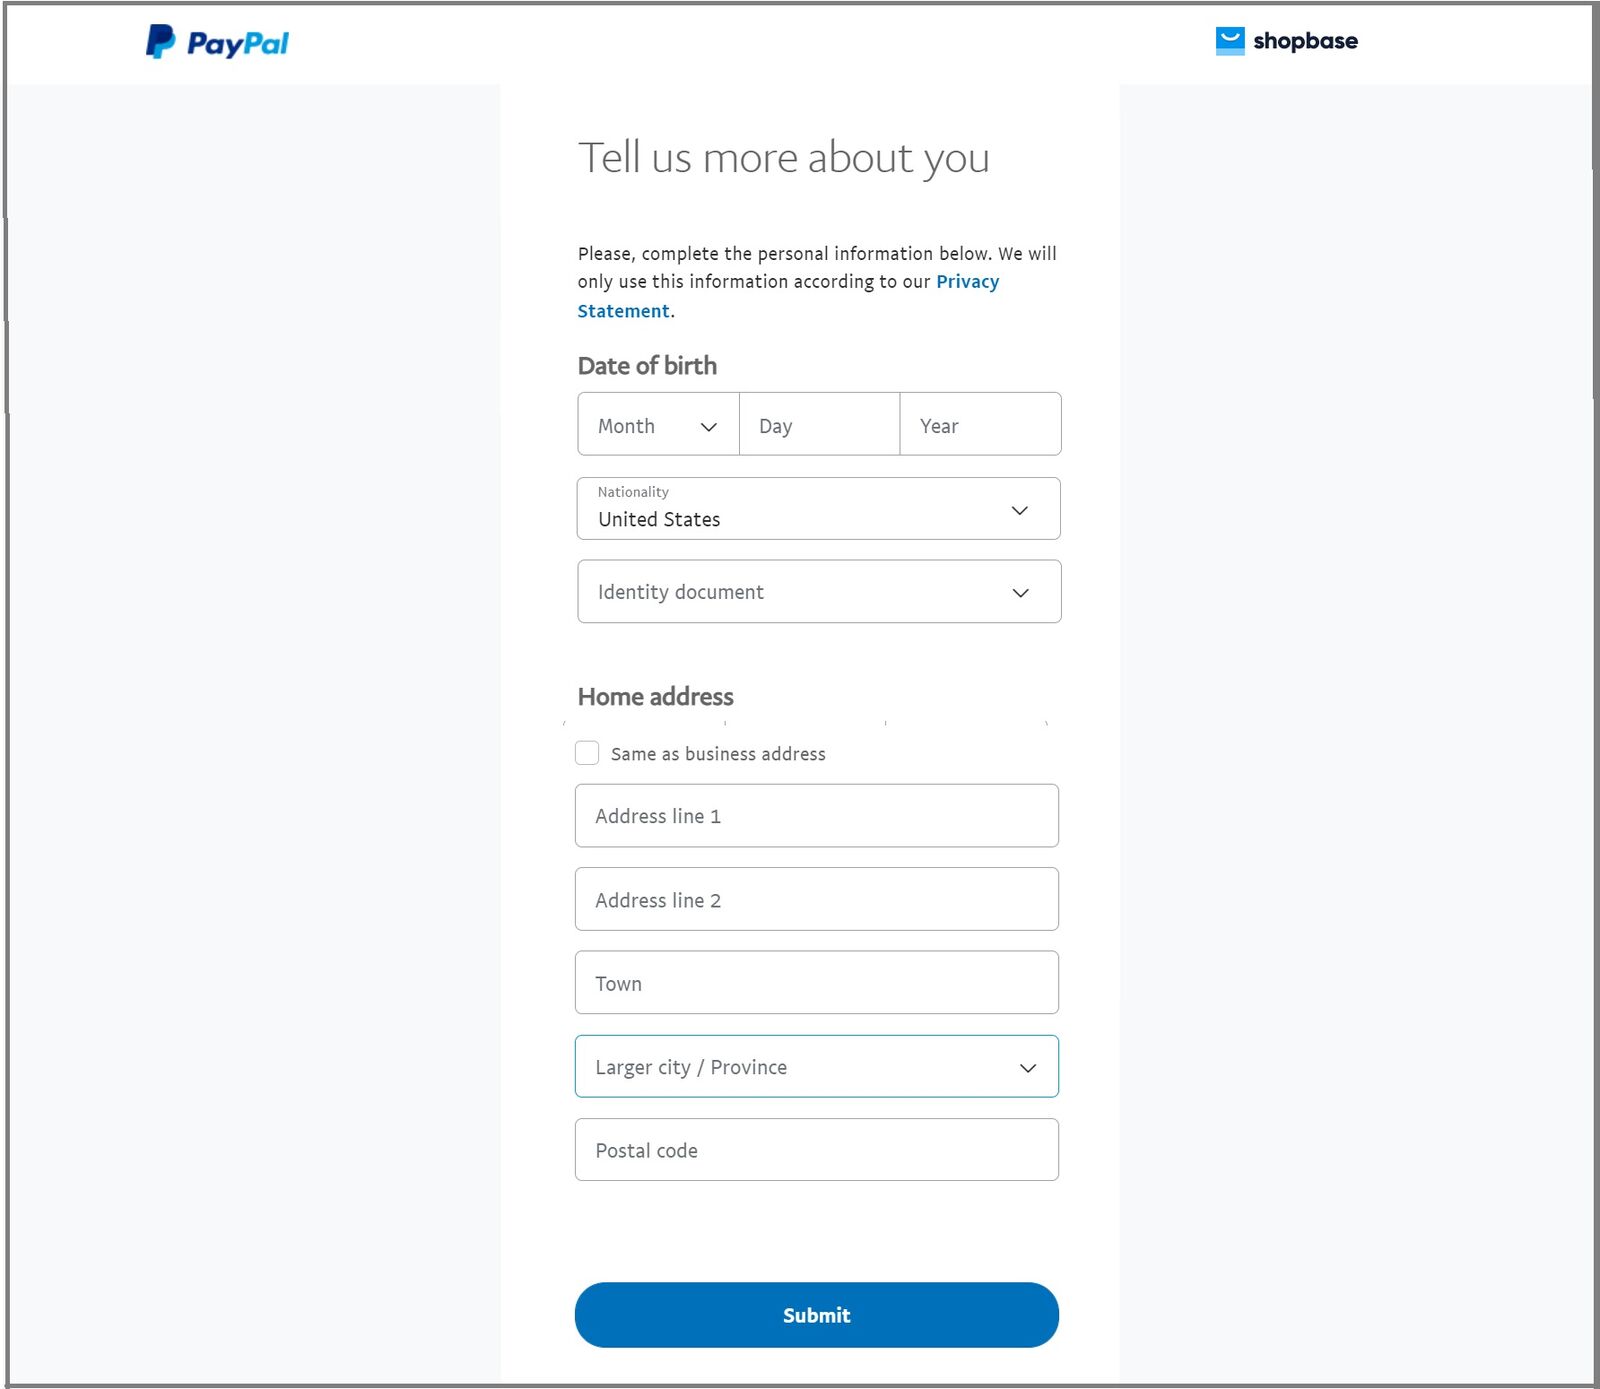 Cung cấp các thông tin cá nhân cho PayPal.